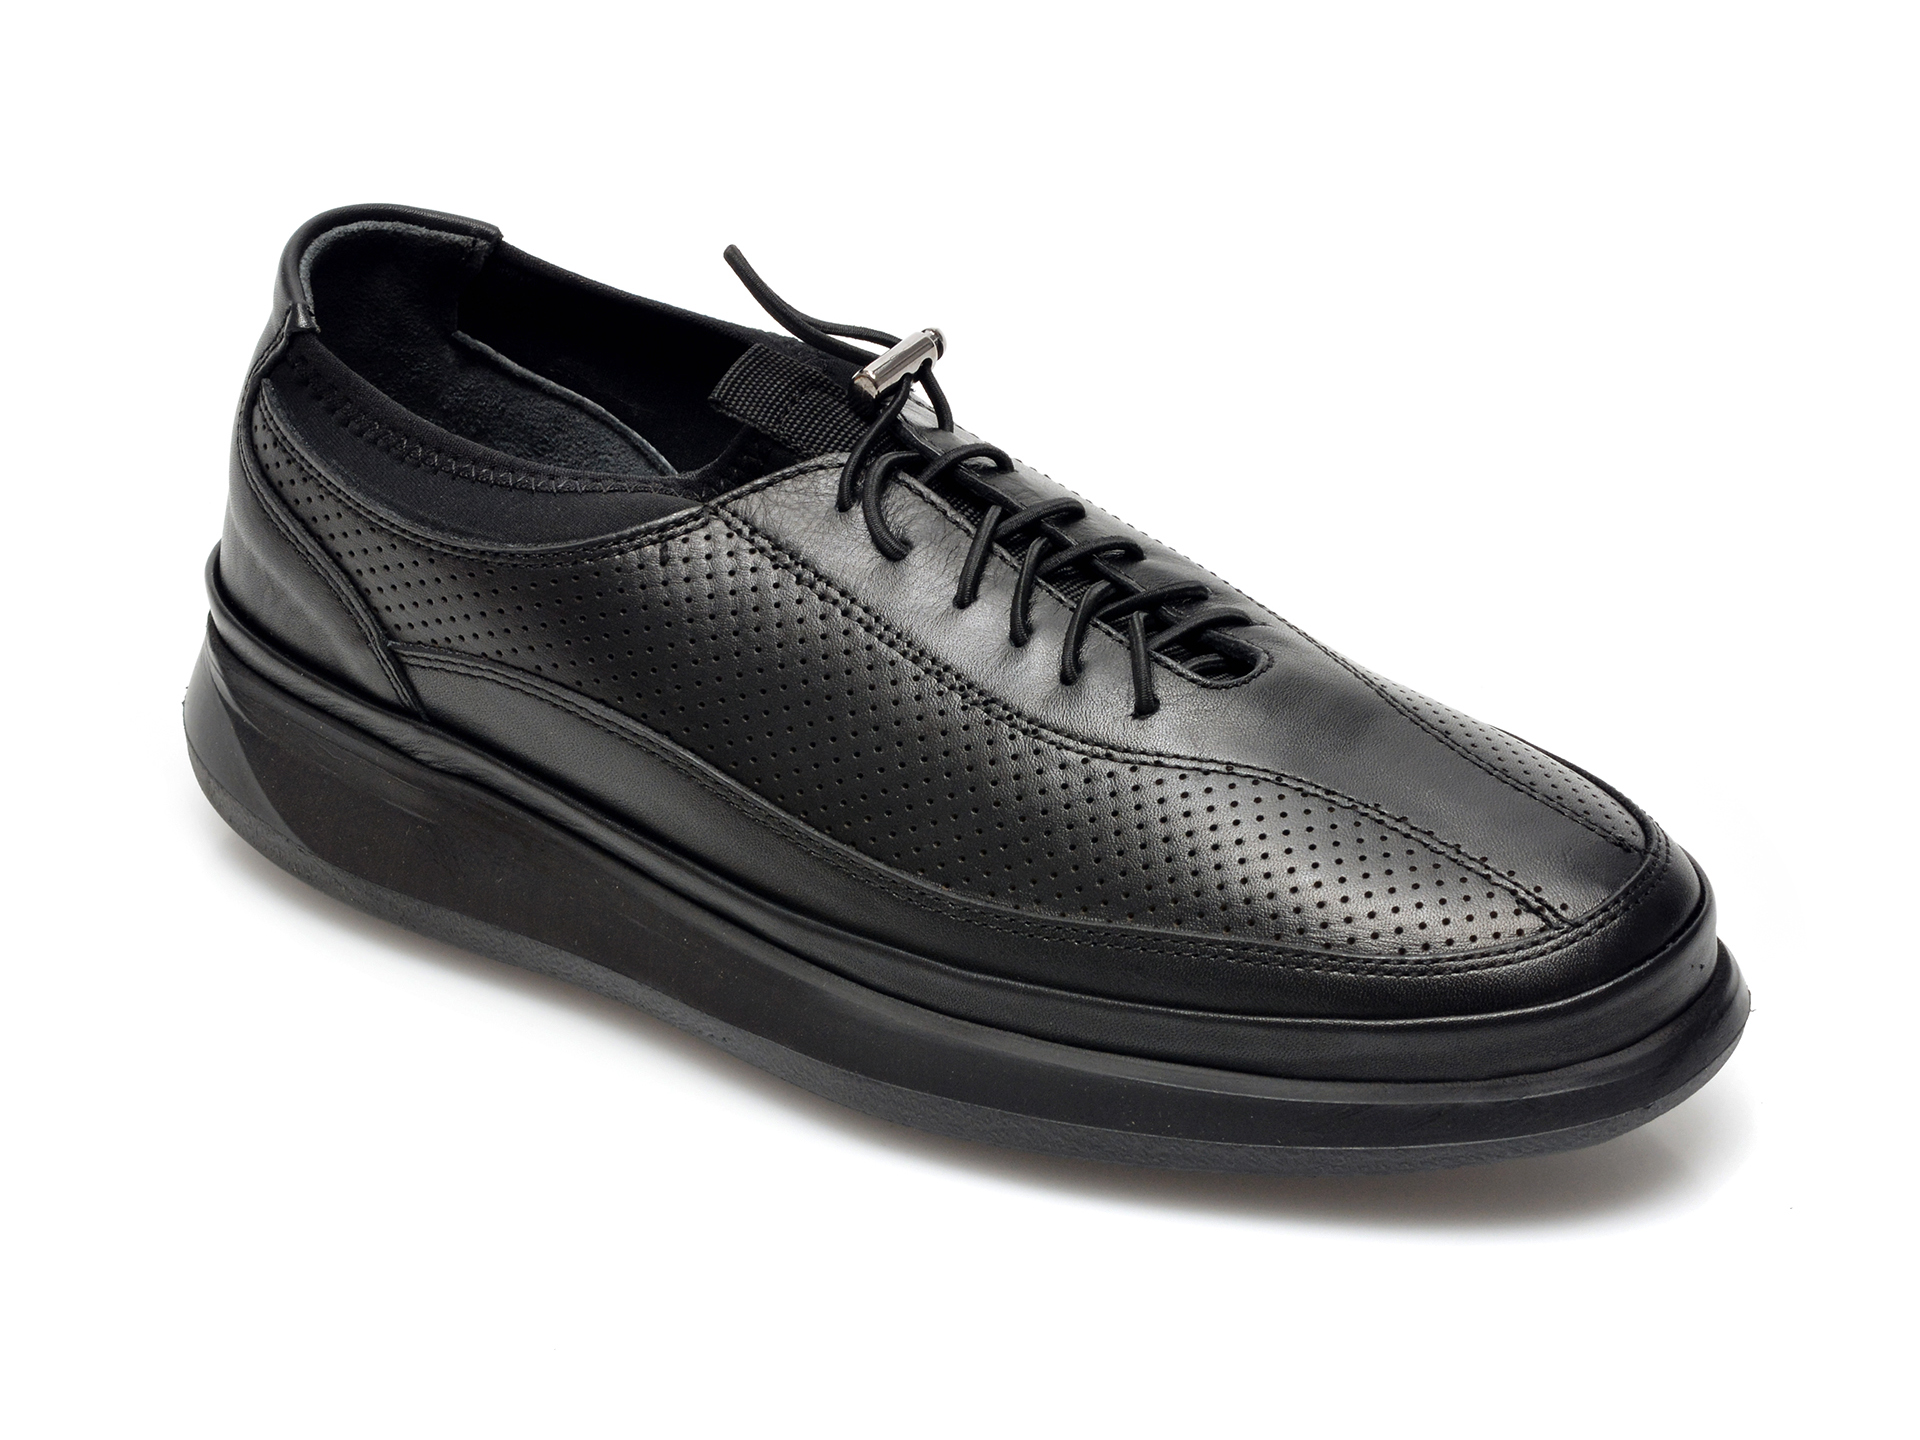 Pantofi OTTER negri, M6065, din piele naturala Otter poza reduceri 2021